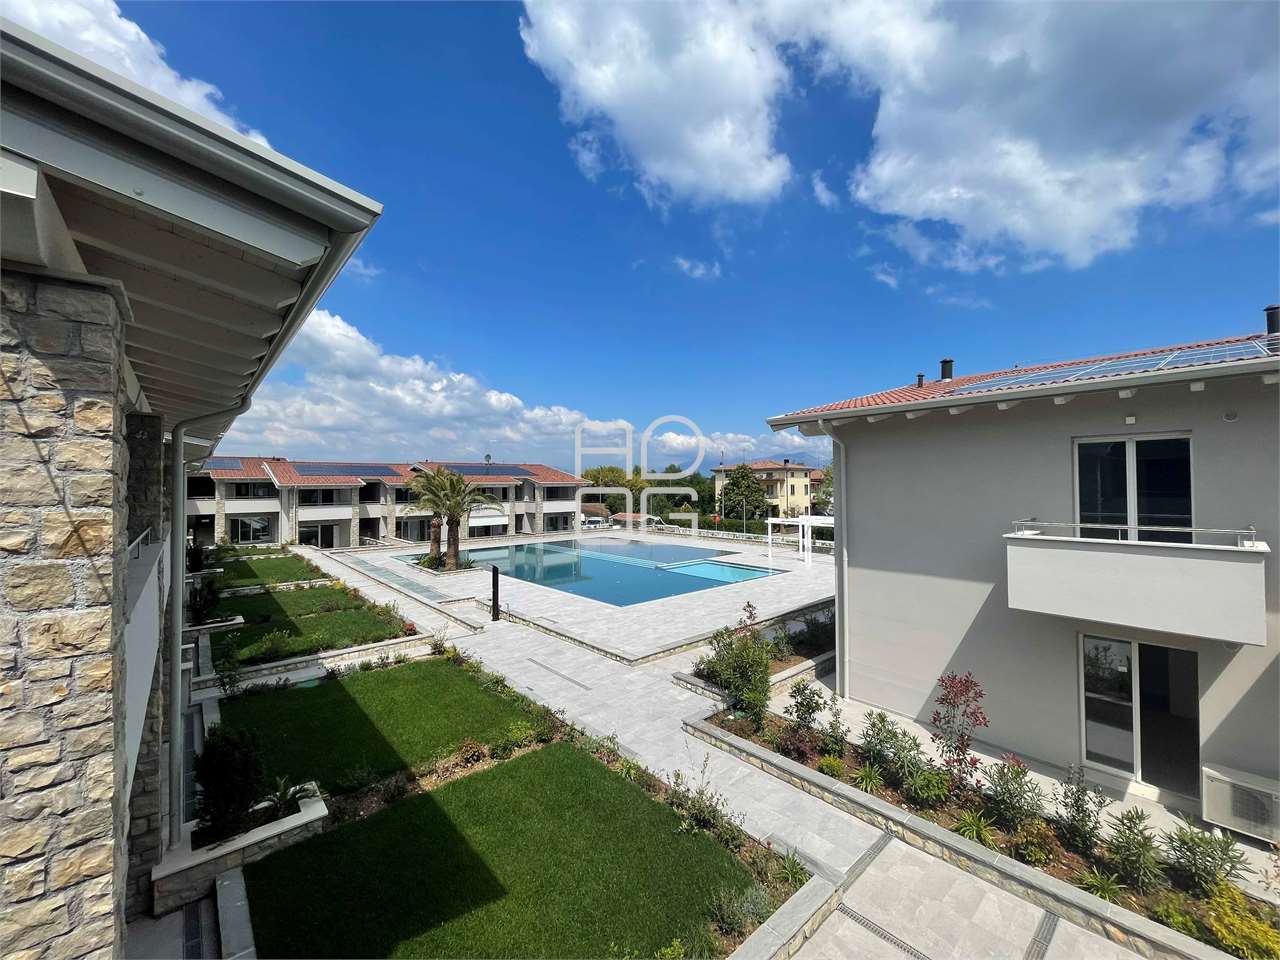 Nuovo residence con la piscina in classe A a Desenzano del Garda